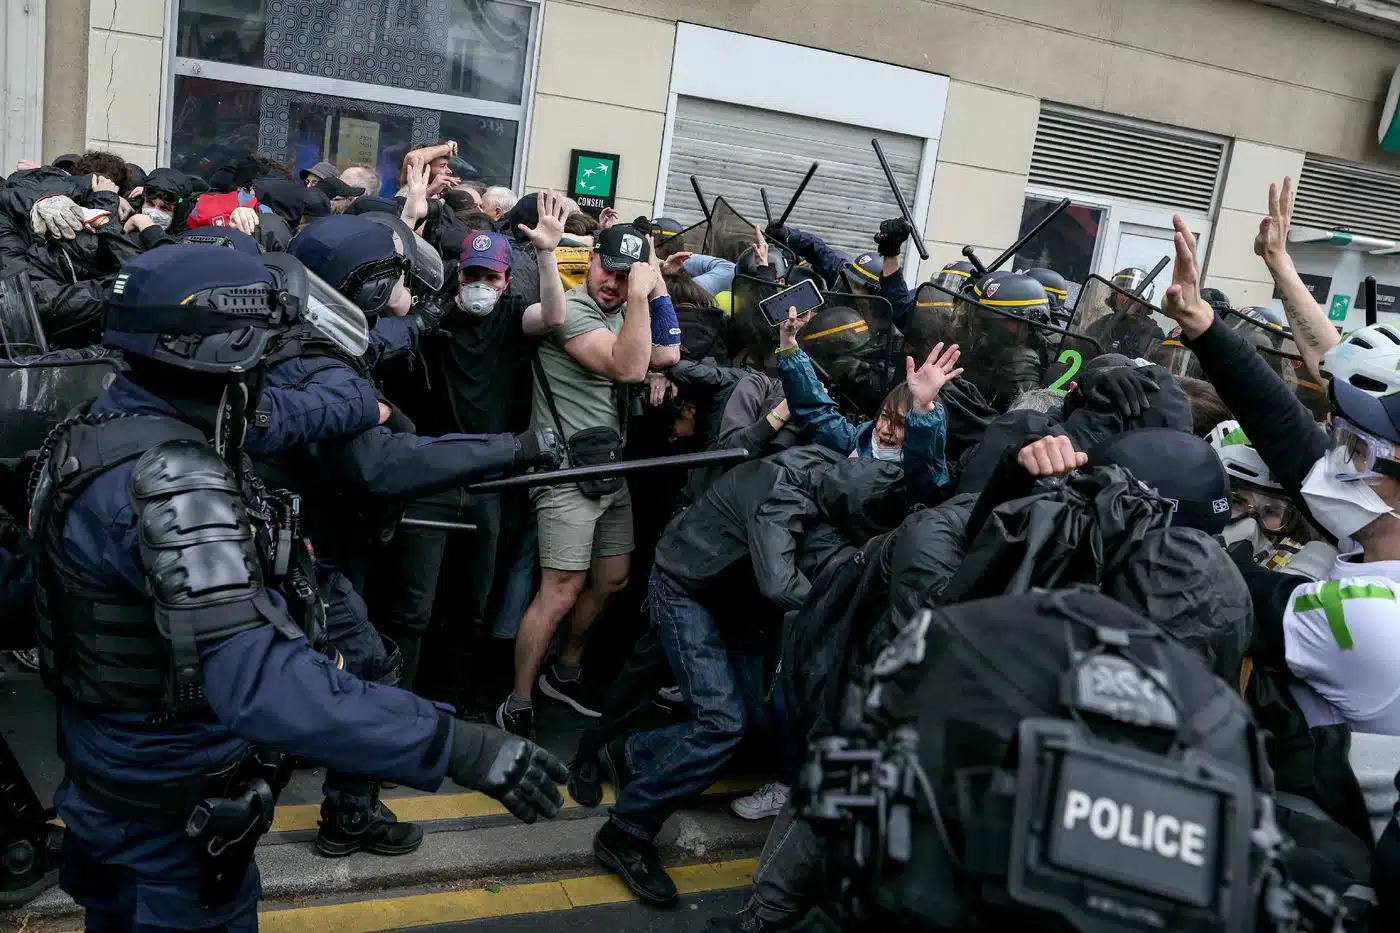 Tensions lors de la manifestation du 1er-Mai à Paris : 13 policiers blessés, plusieurs interpellations